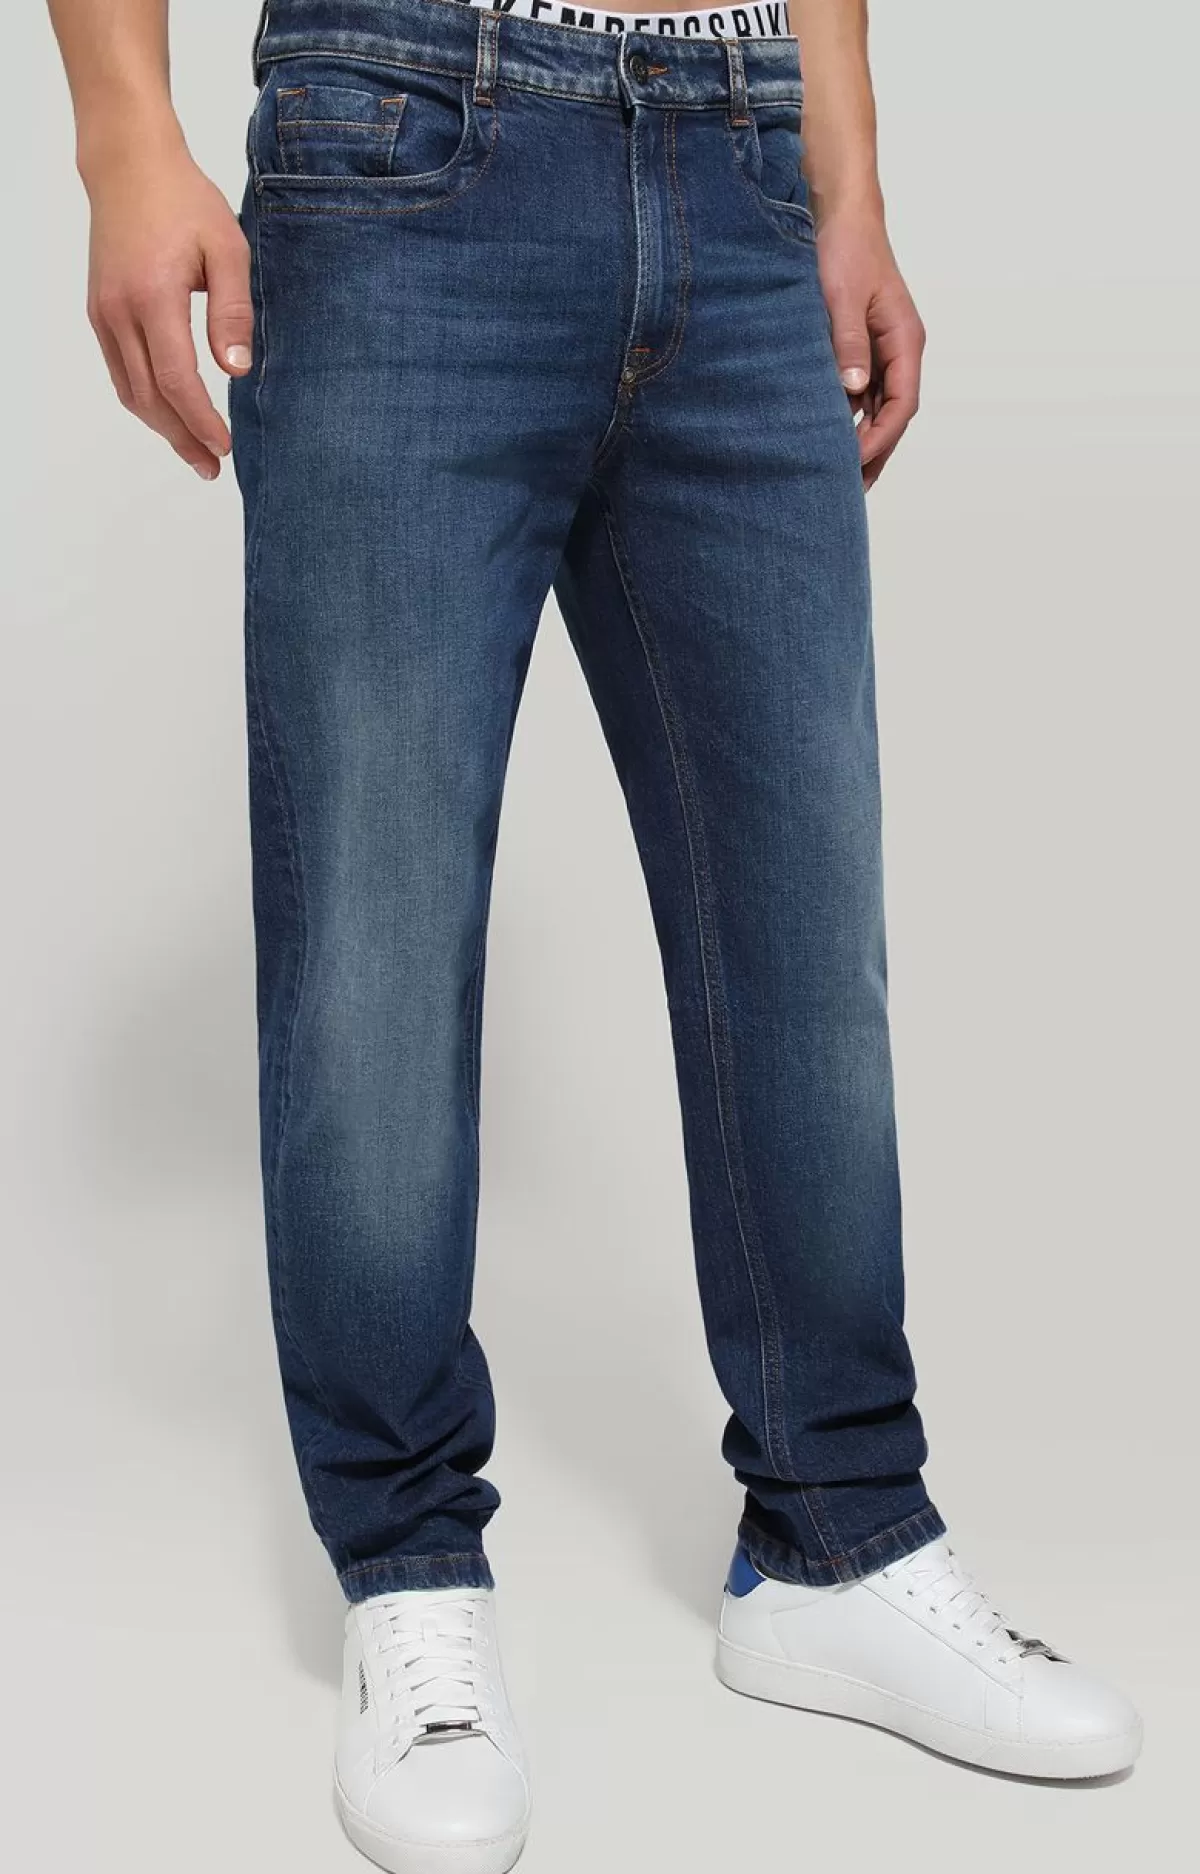 Bikkembergs Men'S Jeans Regular Fit With Tape Blue Denim Shop